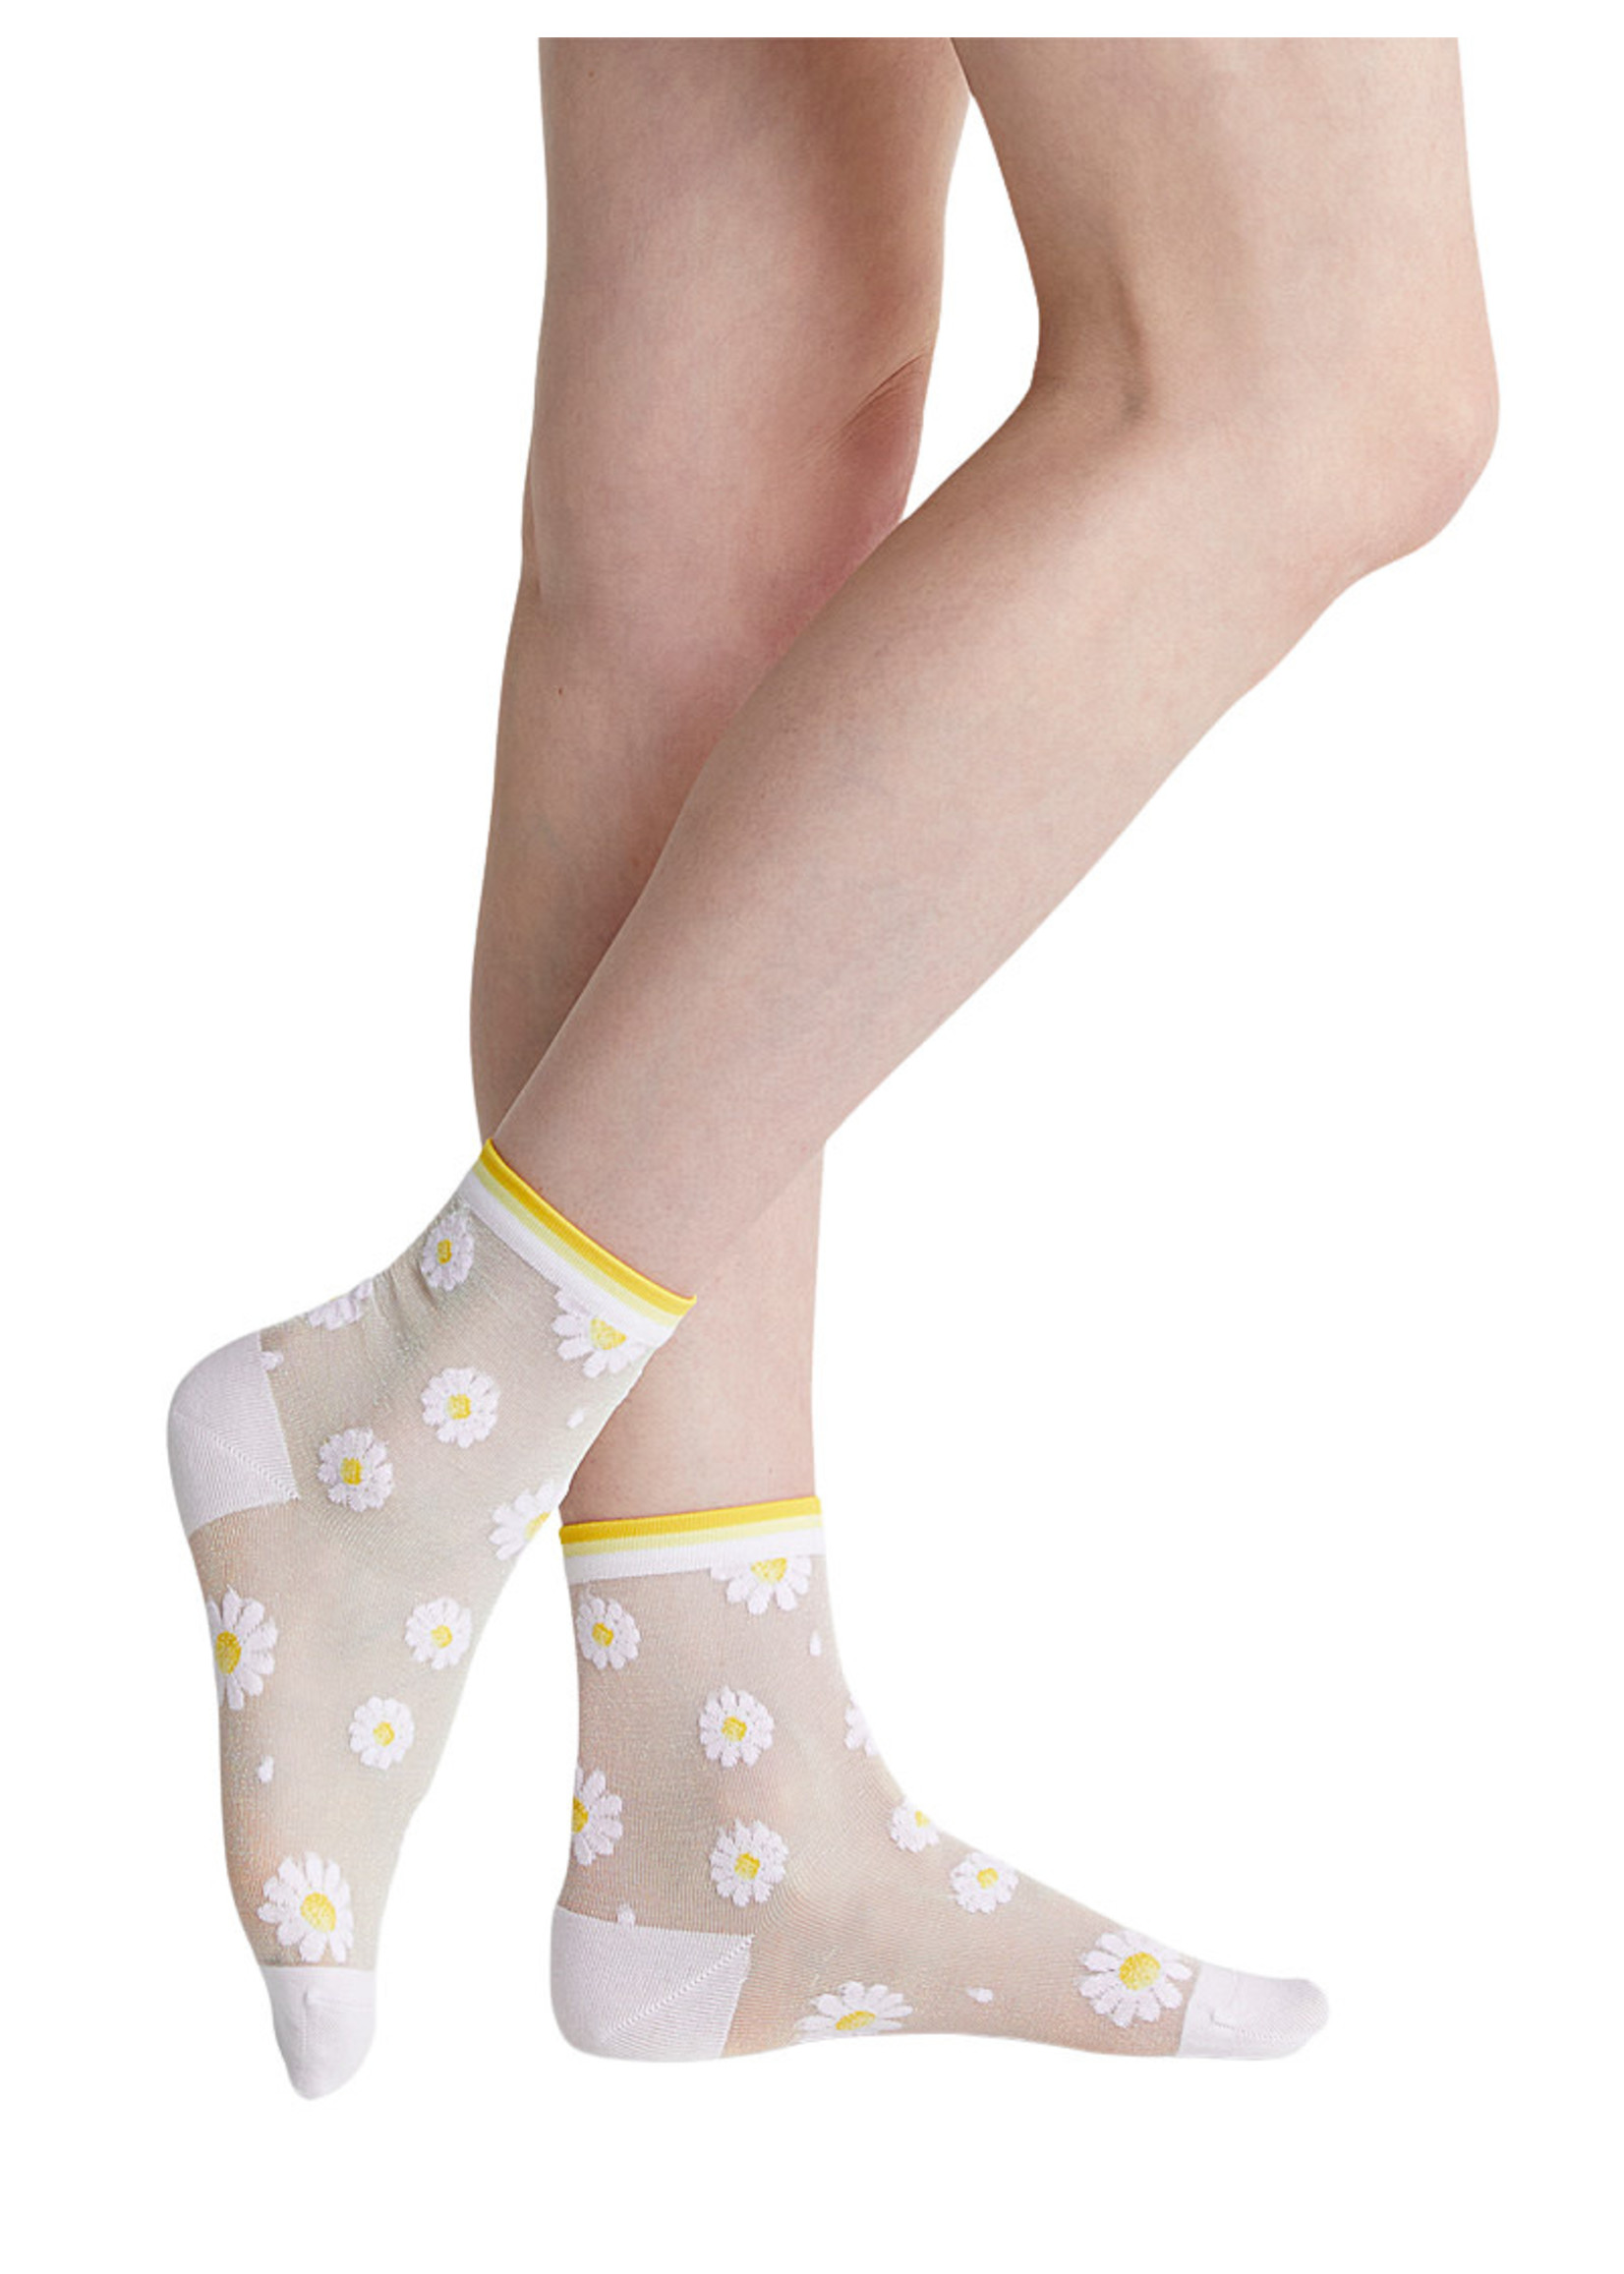 Bleuforet Sheer Daisy Ankle Socks